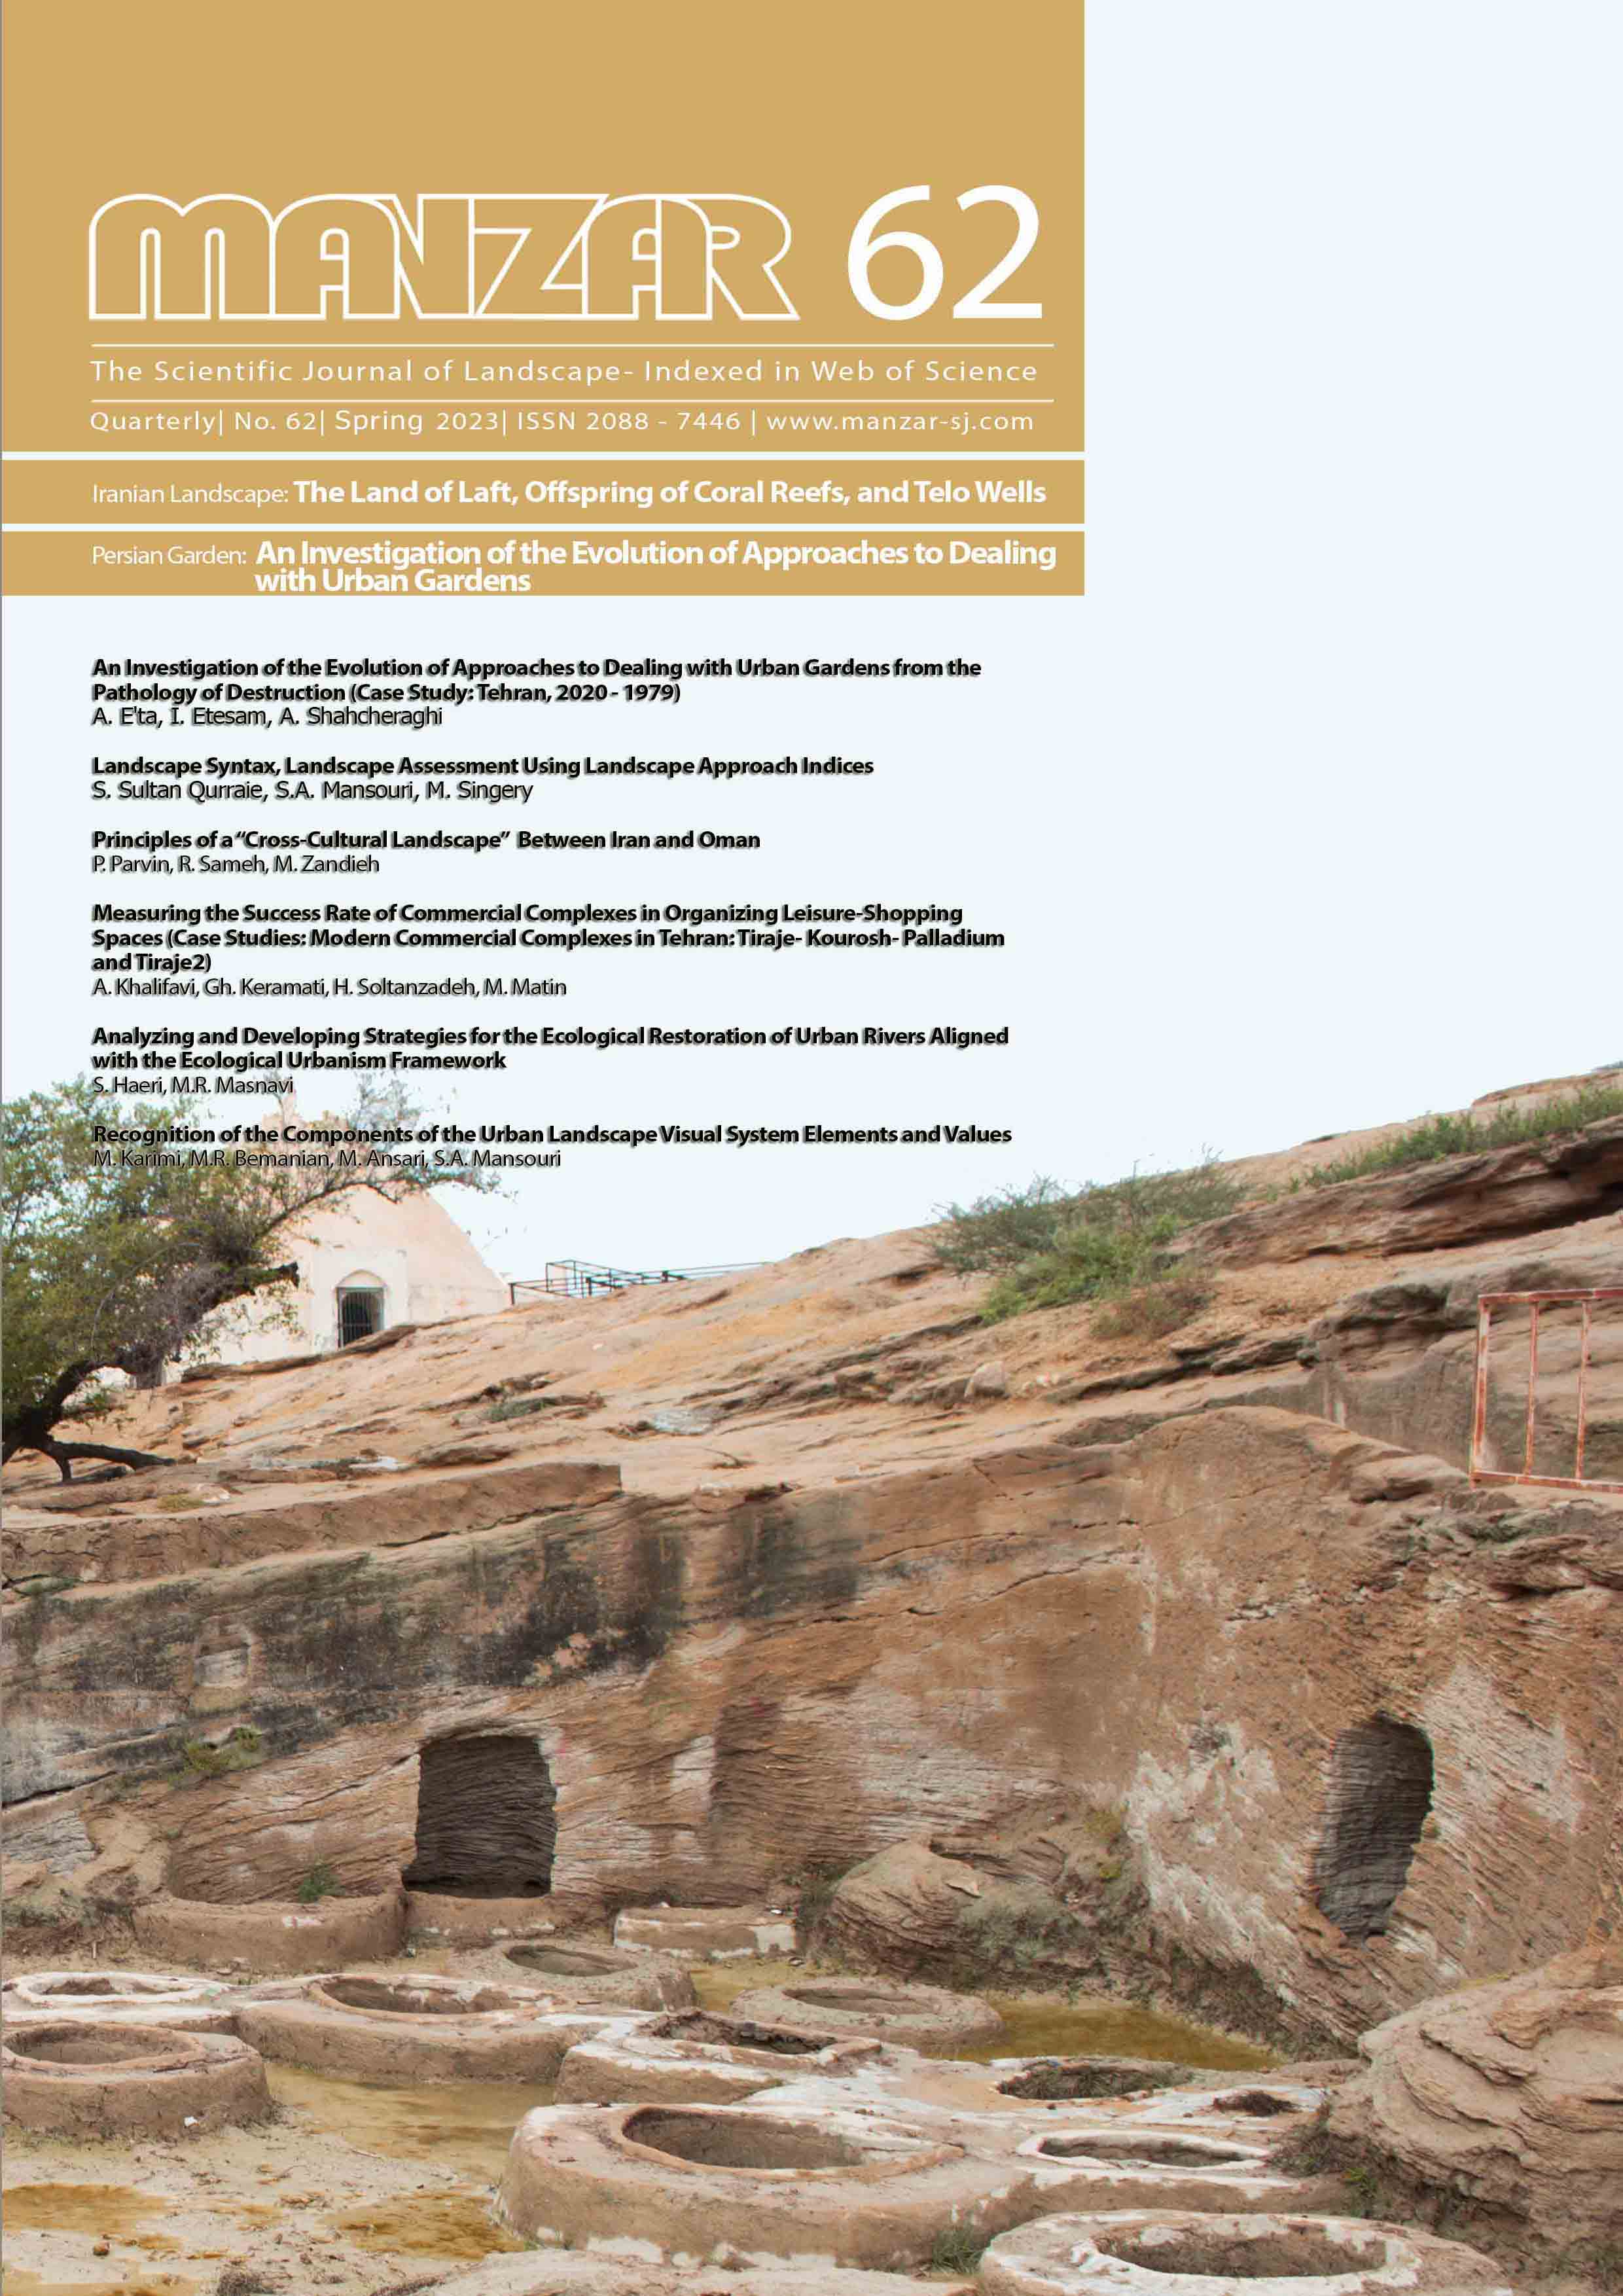 MANZAR, the Scientific Journal of landscape